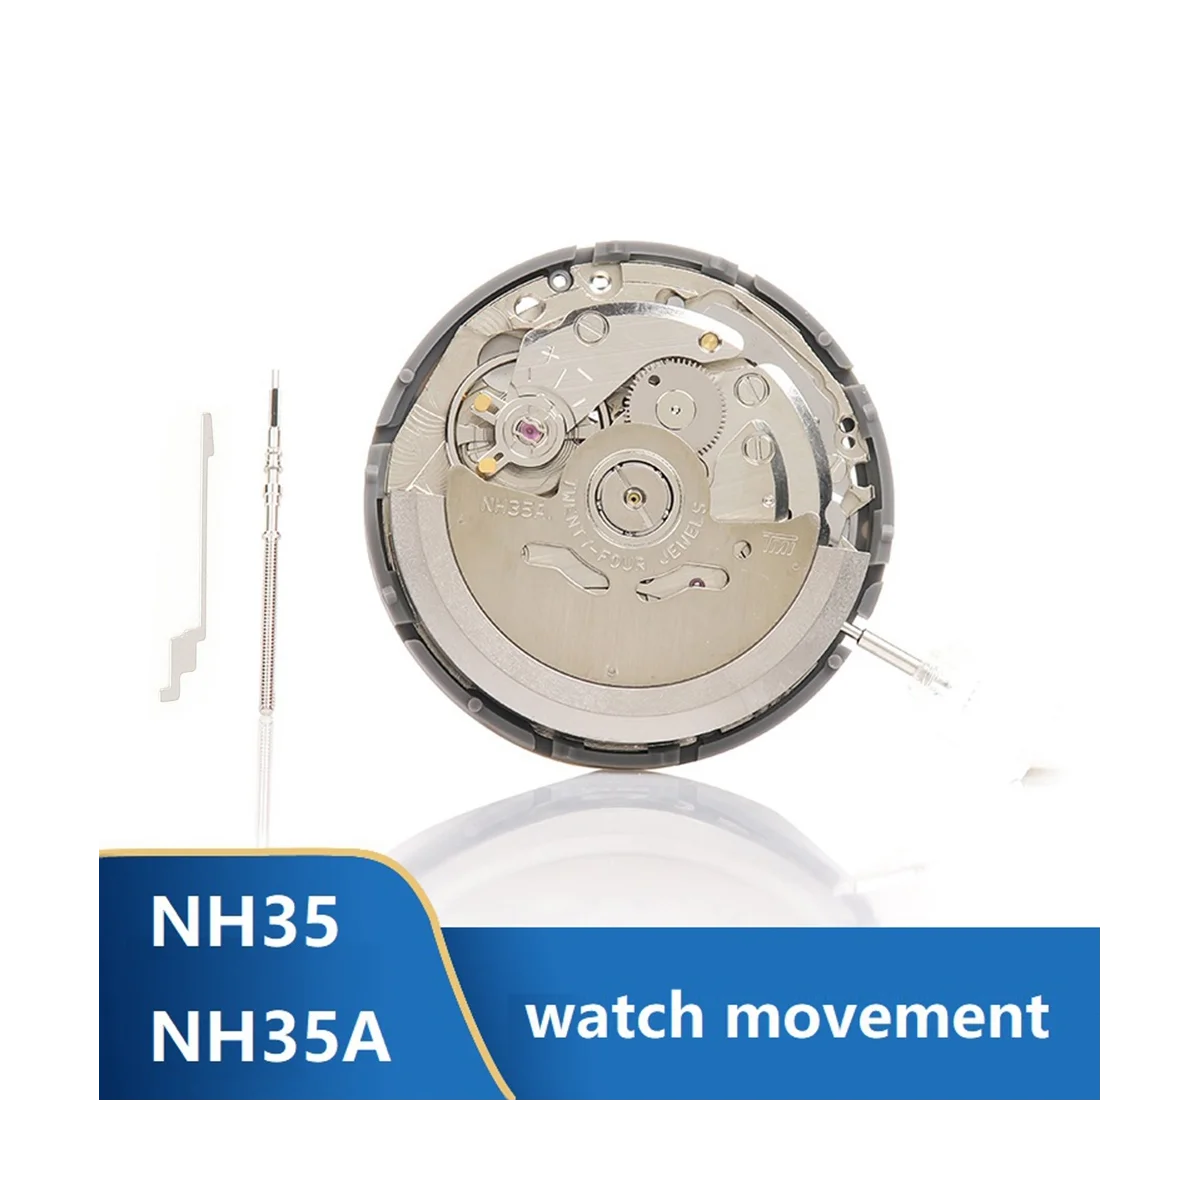 

Механизм NH35/NH35A, часы со стальным стержнем и контрольным стержнем, поддержка даты дня, высокоточные автоматические механические часы